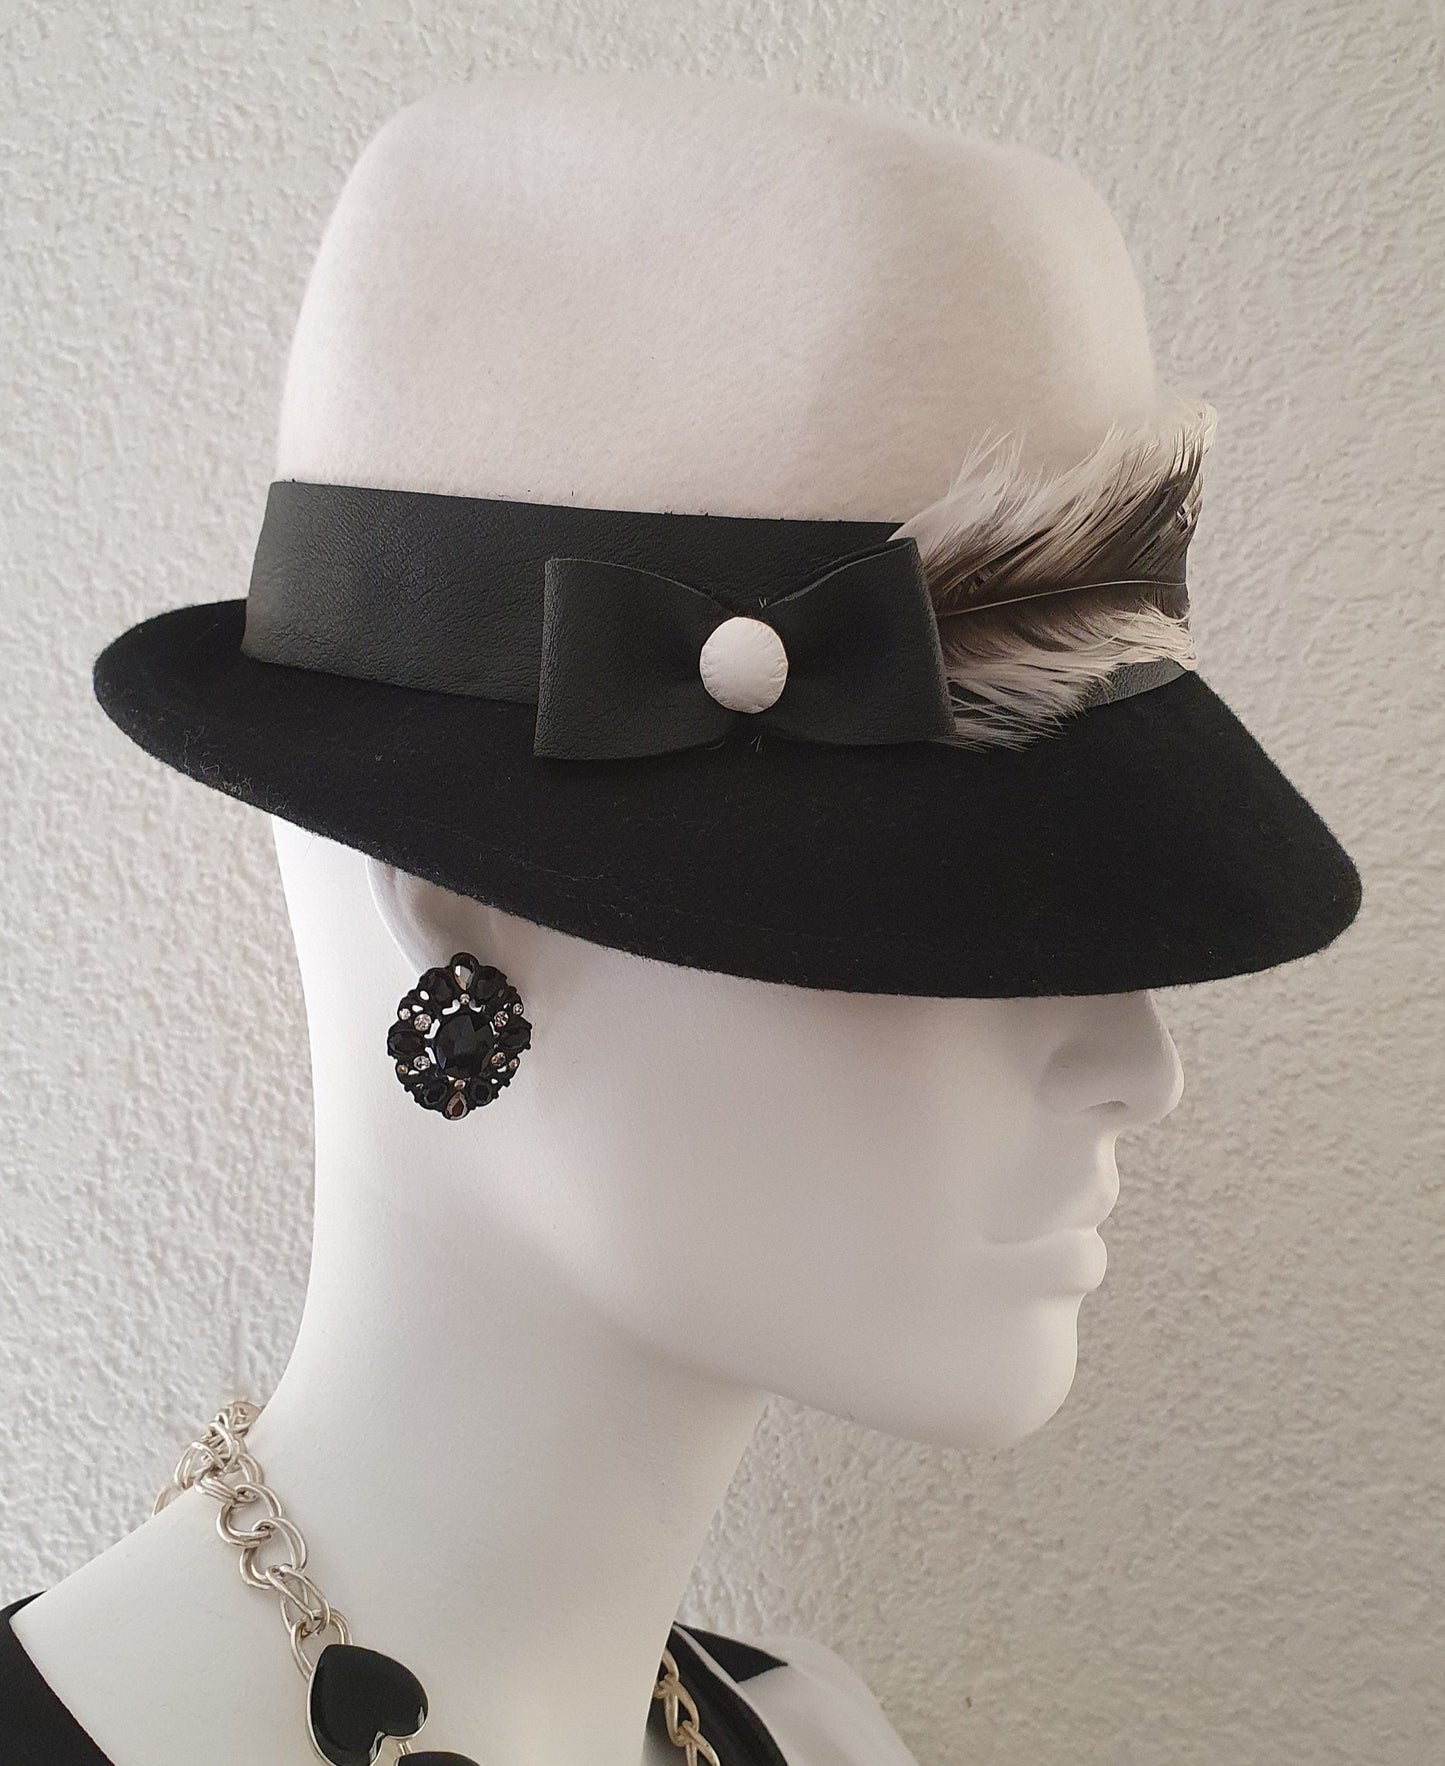 Elegante sombrero de mujer sombrero de fieltro blanco y negro fedora- fascinador elegante, sombrero de fieltro, tocado